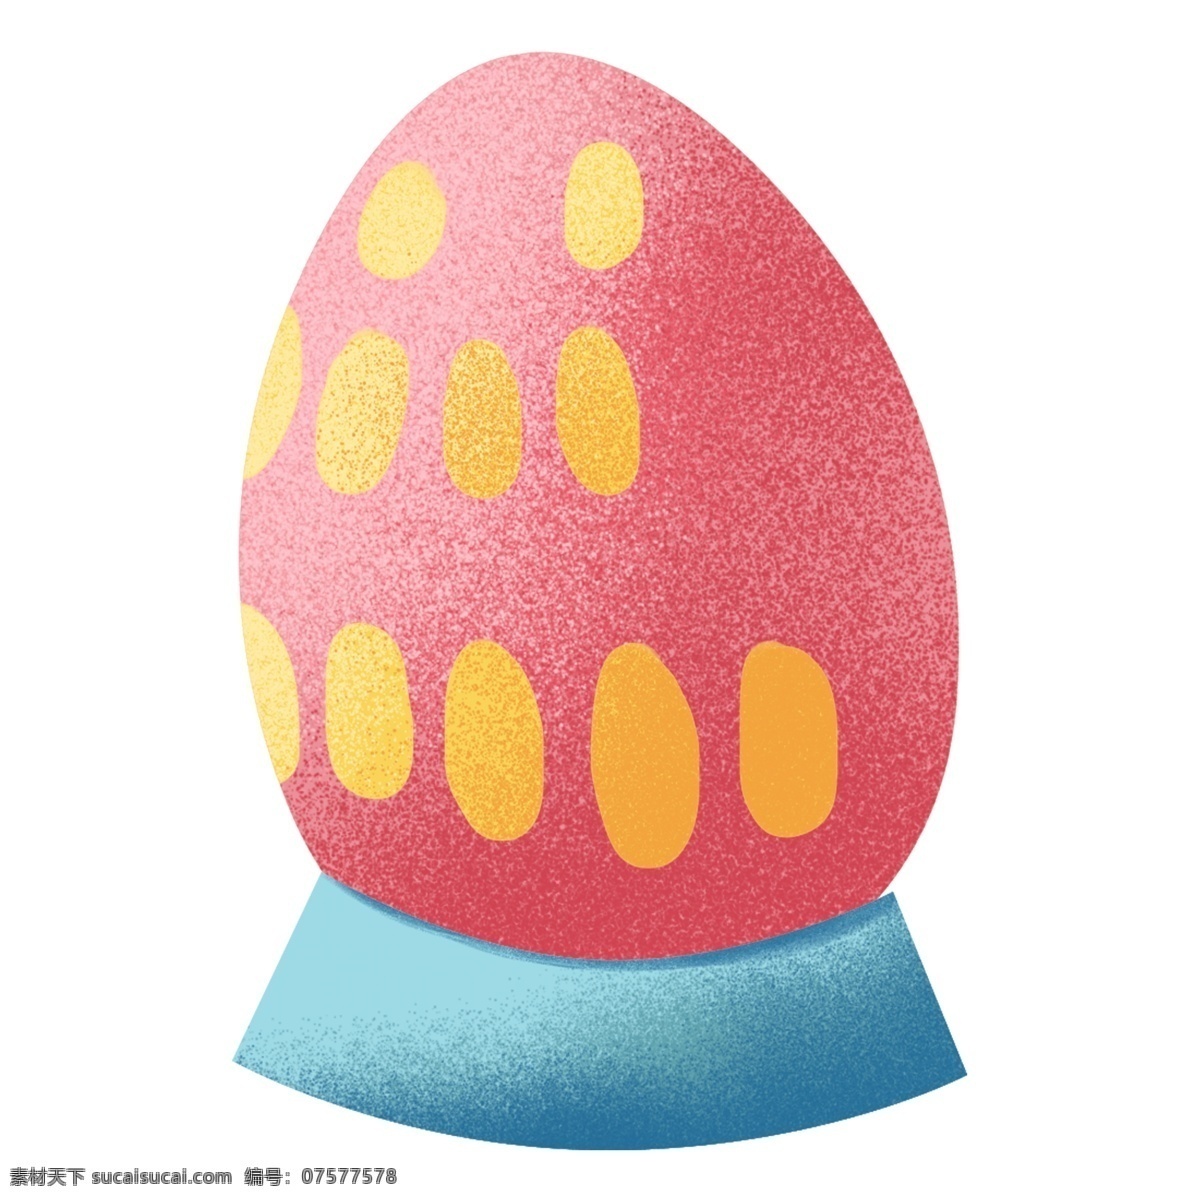 复活节 彩蛋 透明 元素 节日 花纹 美丽 纹理 可爱 蛋 精美